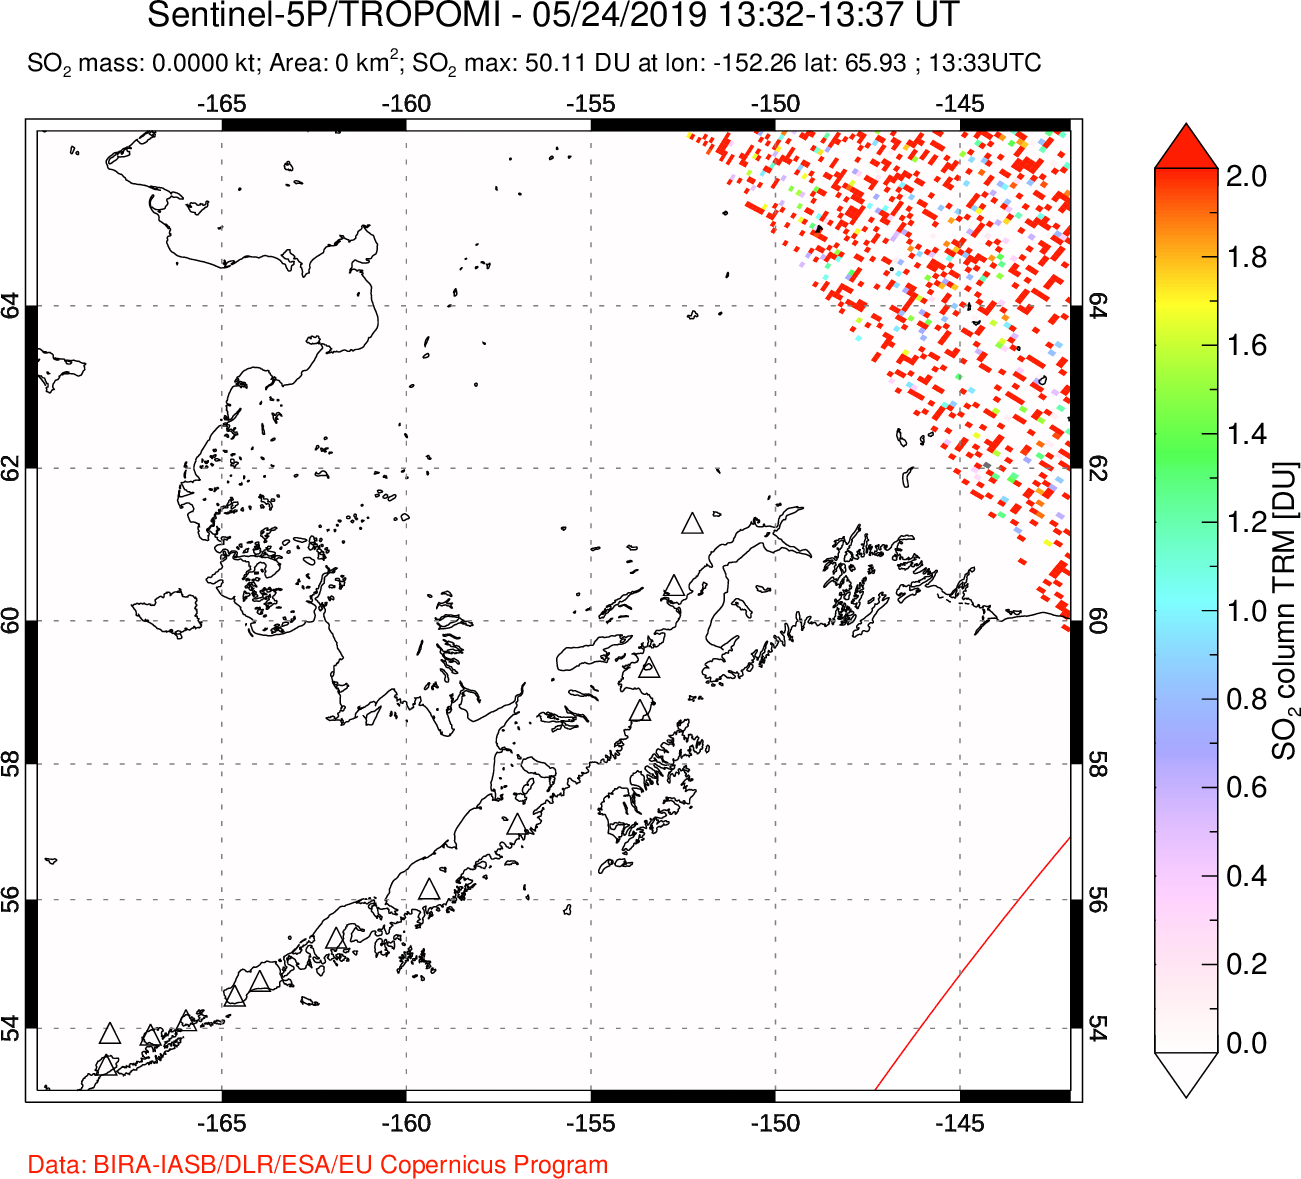 A sulfur dioxide image over Alaska, USA on May 24, 2019.